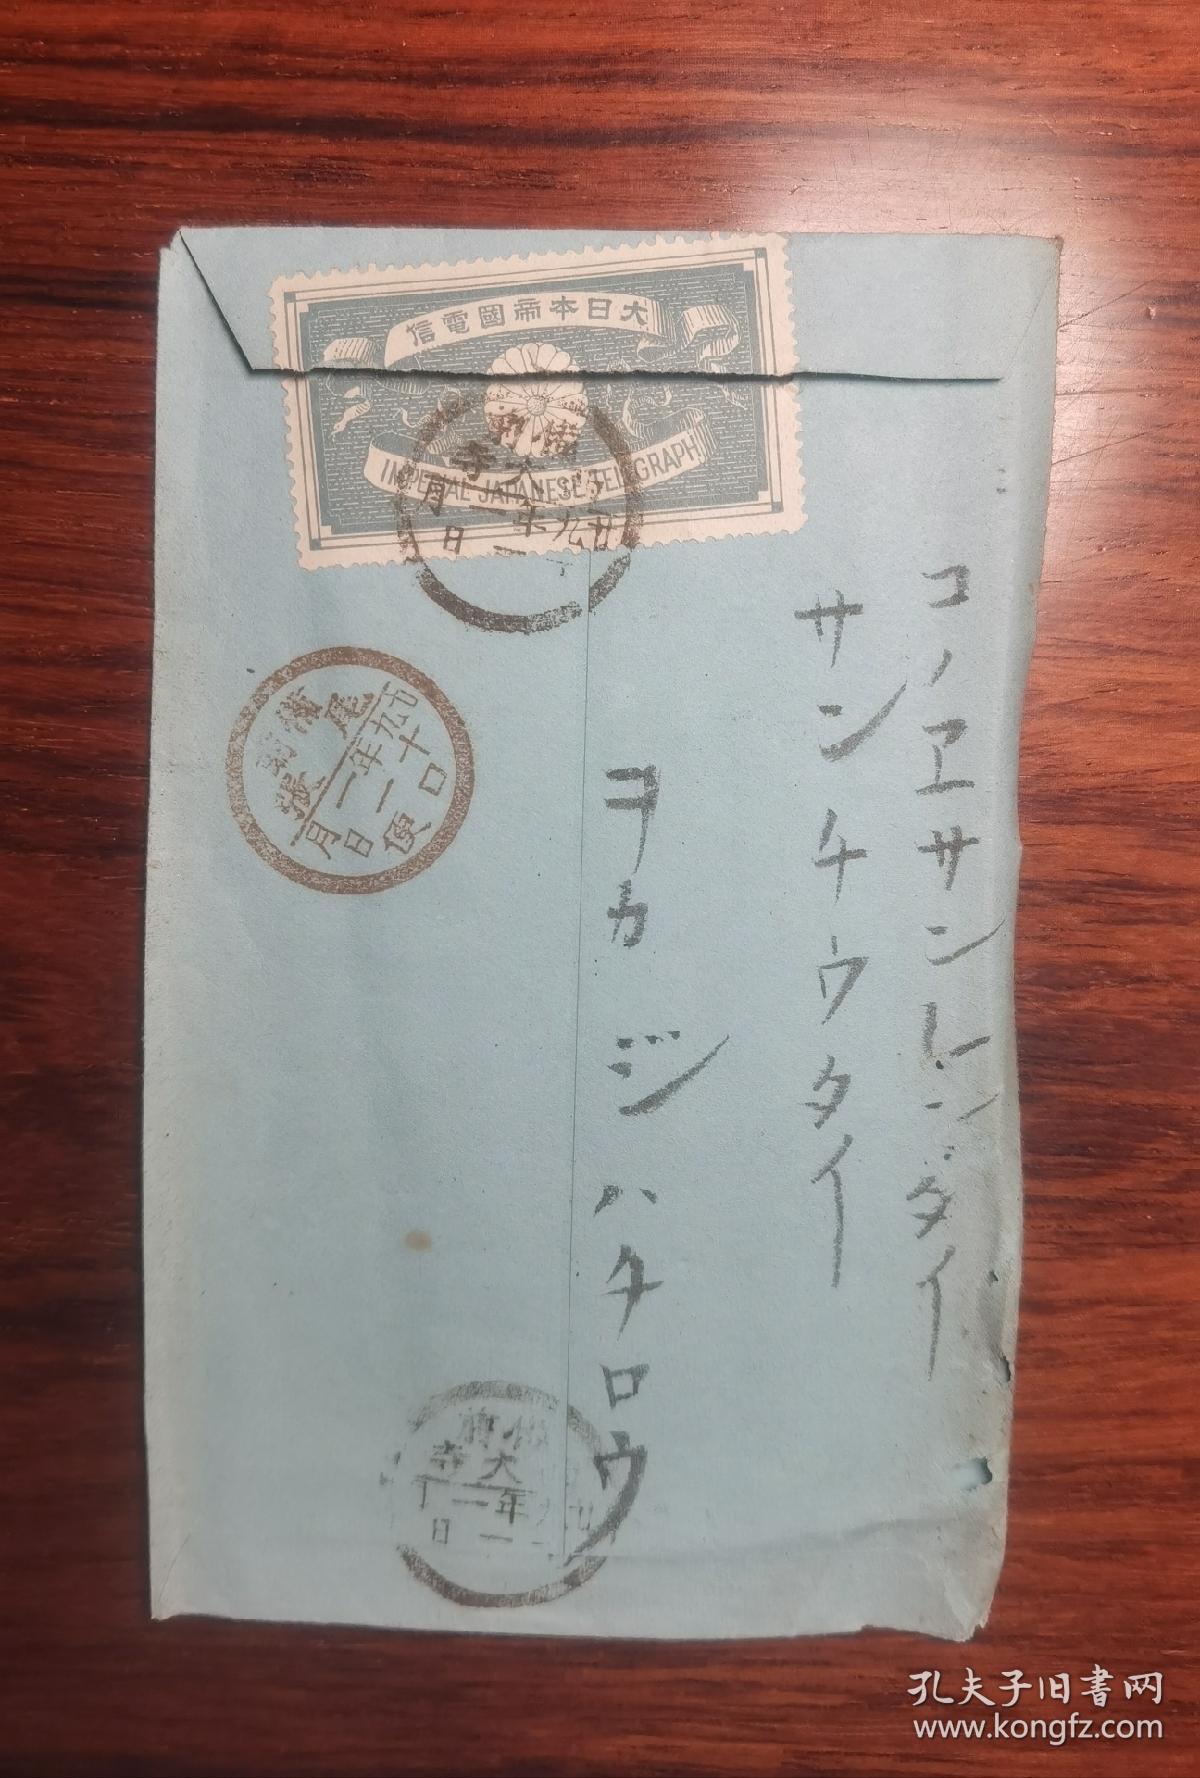 1896年电报一封   上面贴有大日本帝国电信邮票，盖有十几个章戳。内容部分保存完好。